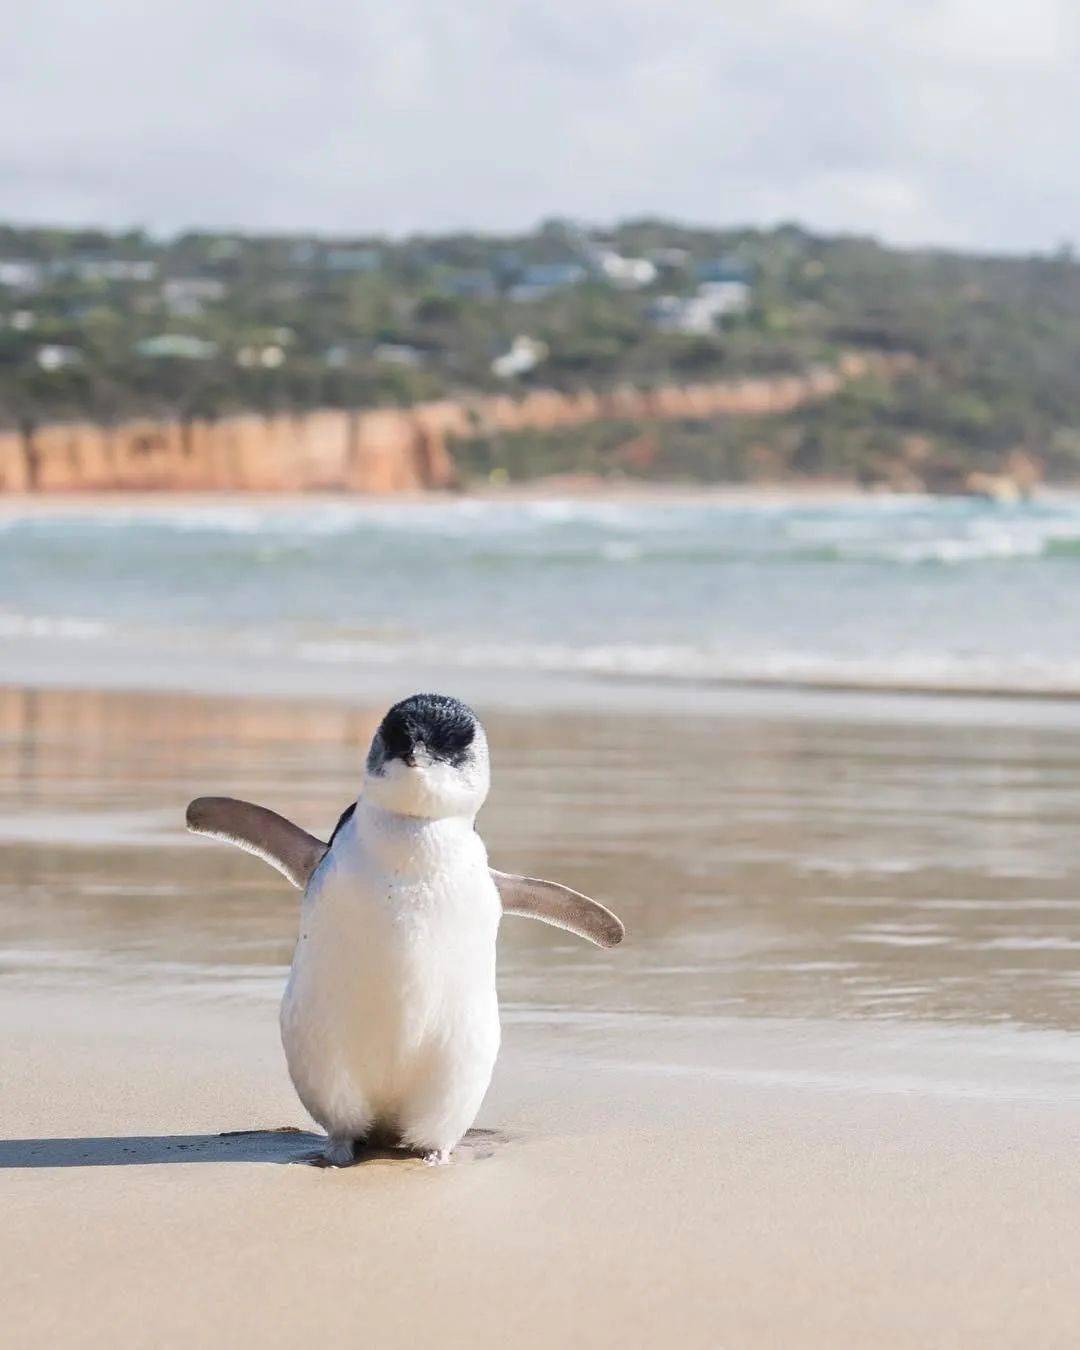 5 年2小蓝企鹅在出生的第一年就能旅行超过 1,000 千米